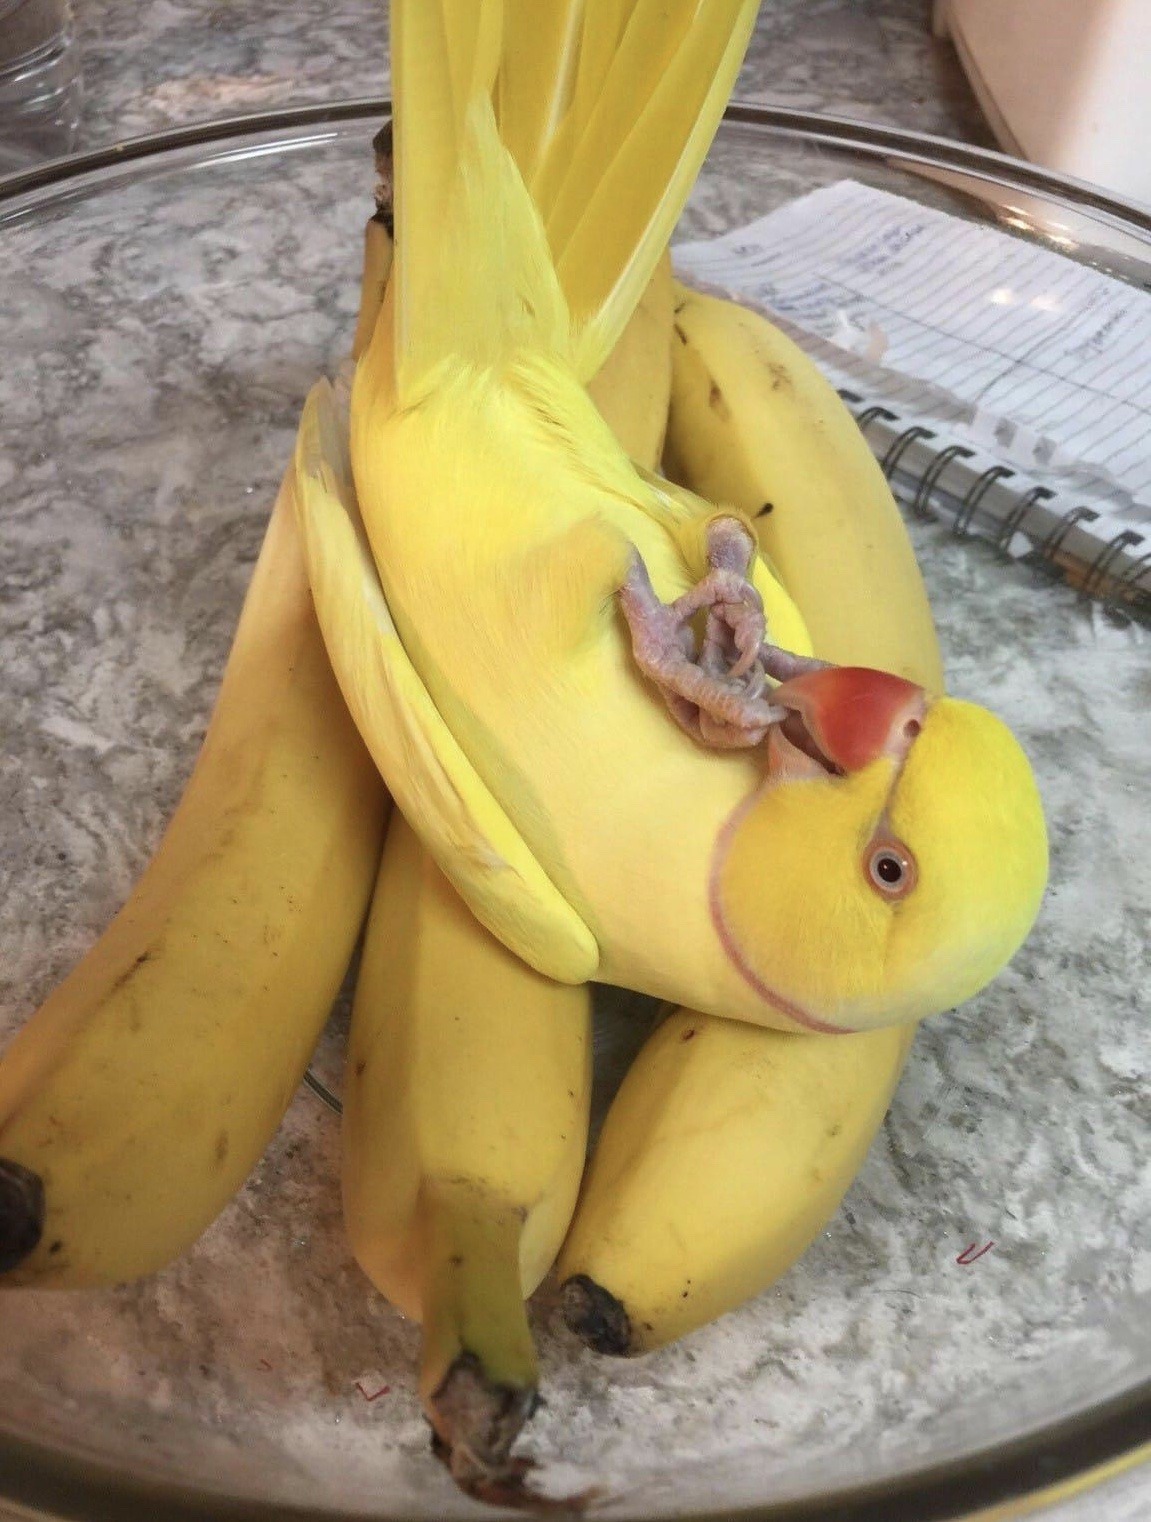 Porn Pics becausebirds:Forbidden banana. 